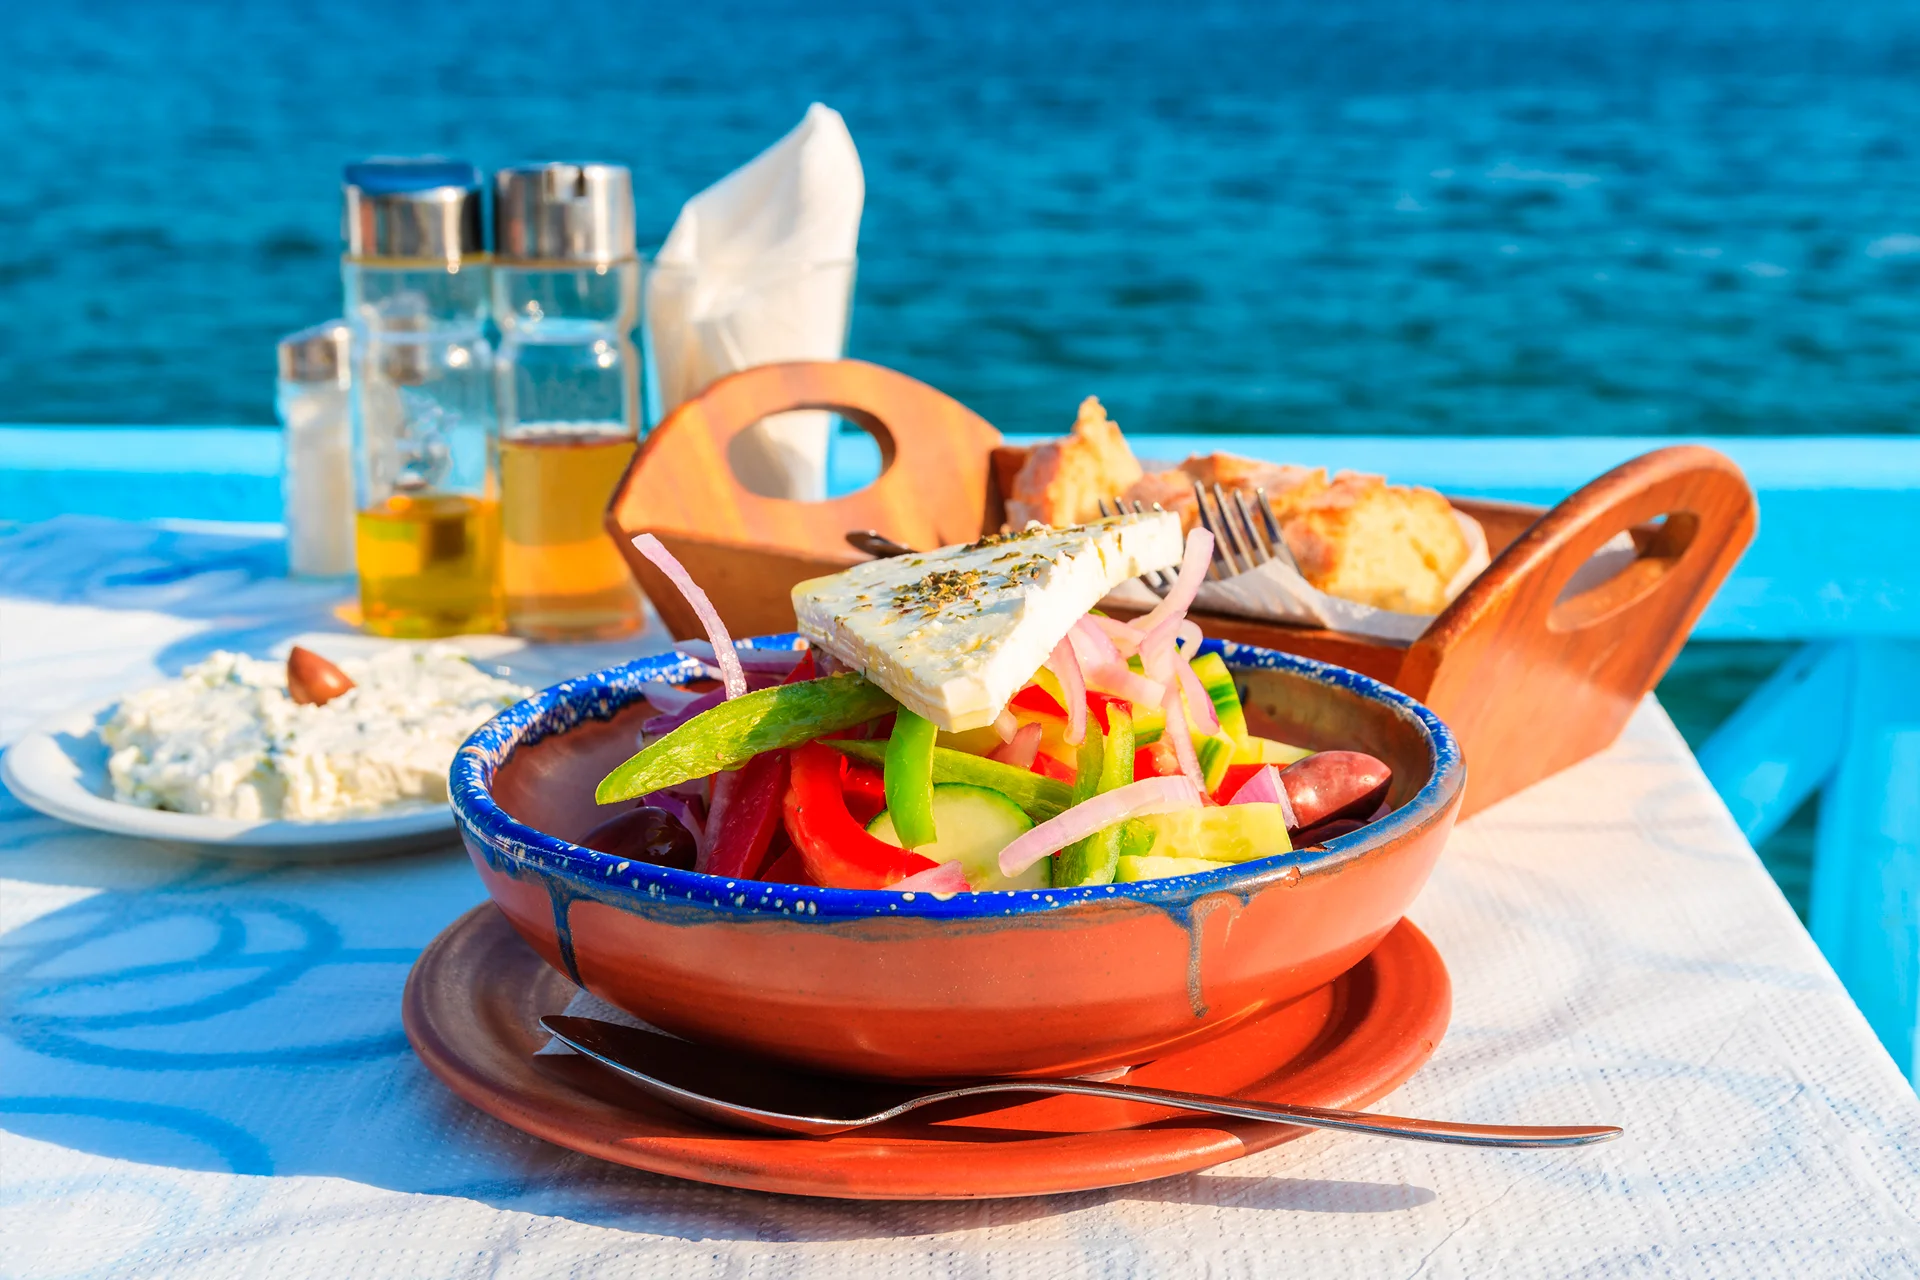 Insalata greca e cibo locale, la gastronomia di Lavrio